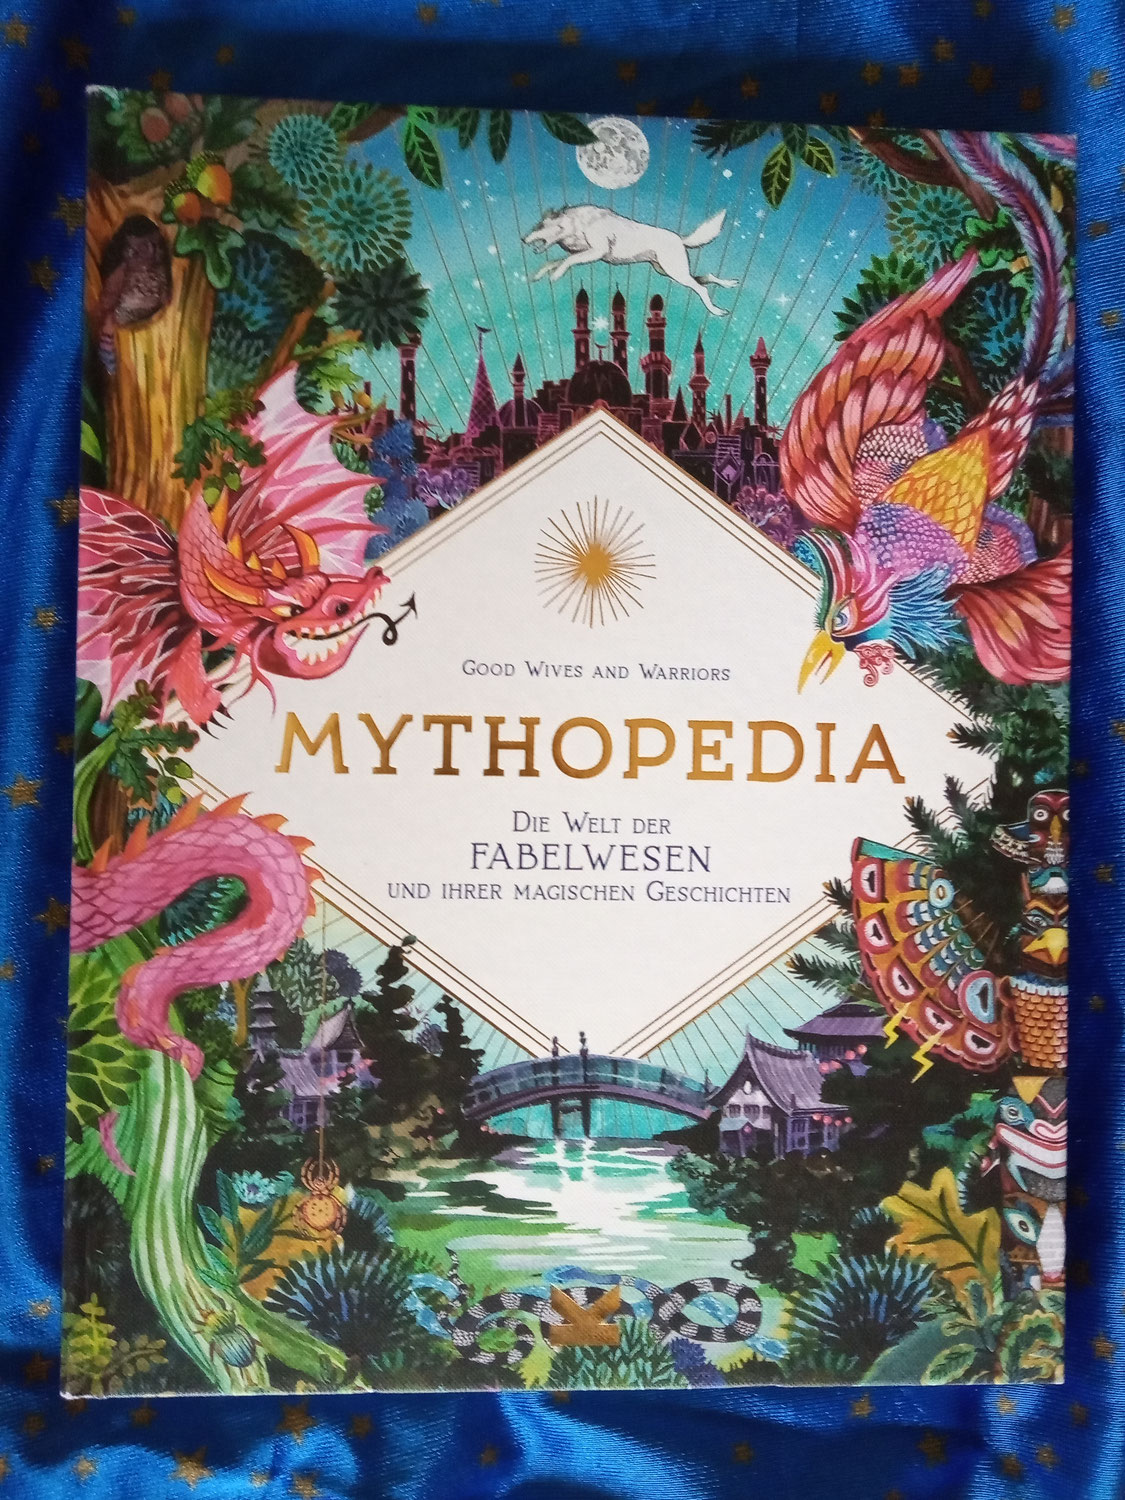 MYTHOPEDIA-Ein Buch mit Mythen aus aller Welt